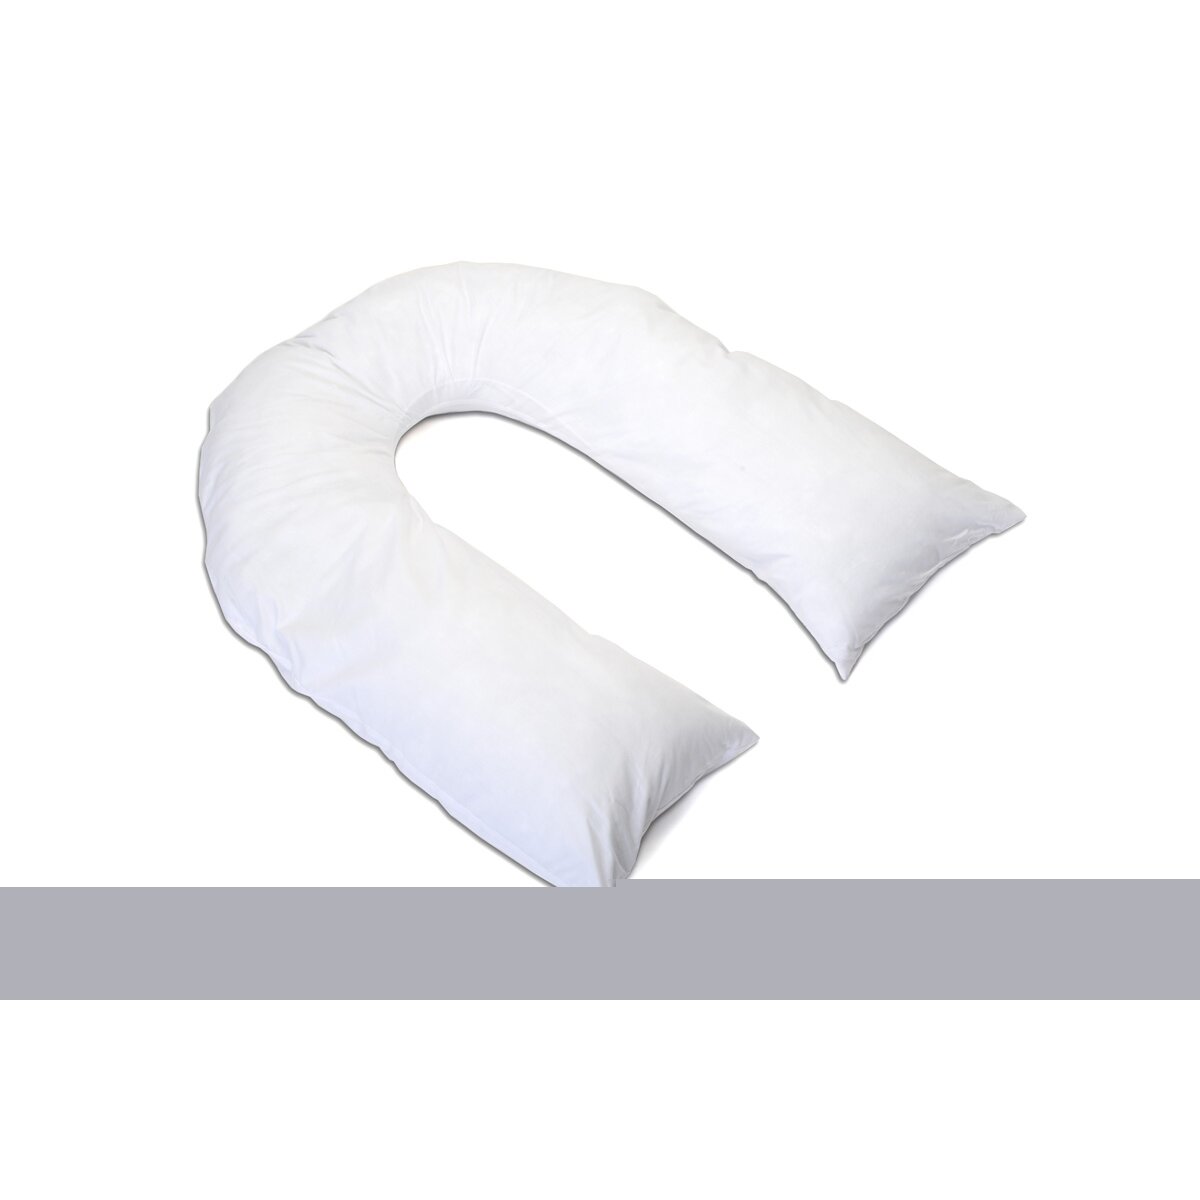 Hermell Softeze Total Body U-Shaped Pillow & Reviews | Wayfair